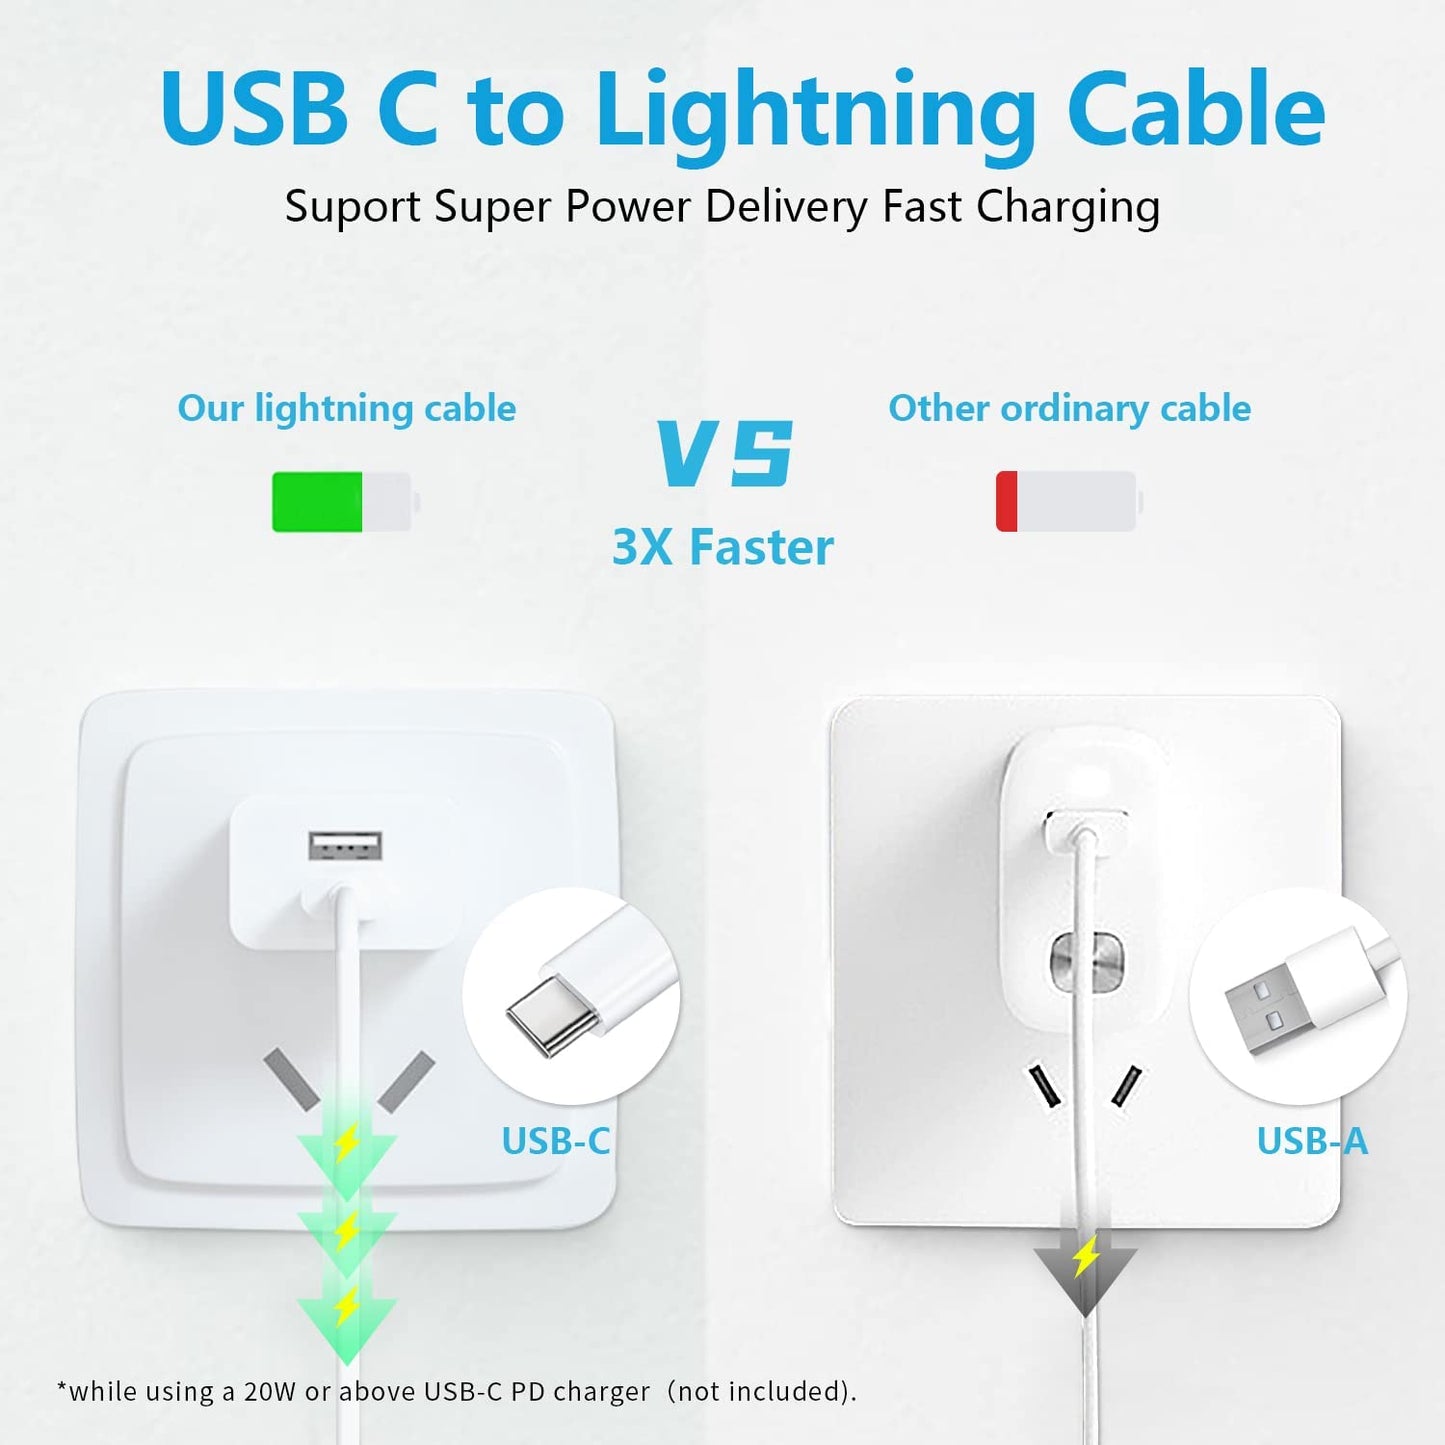 30 Piezas Cable usb-c 2.0 Apple blanco con entrada USB Tipo C salida Lightning Original 1mt